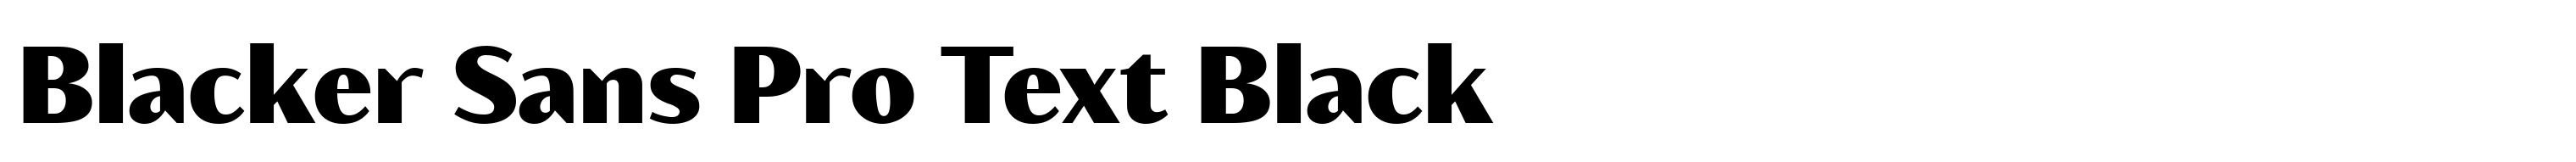 Blacker Sans Pro Text Black